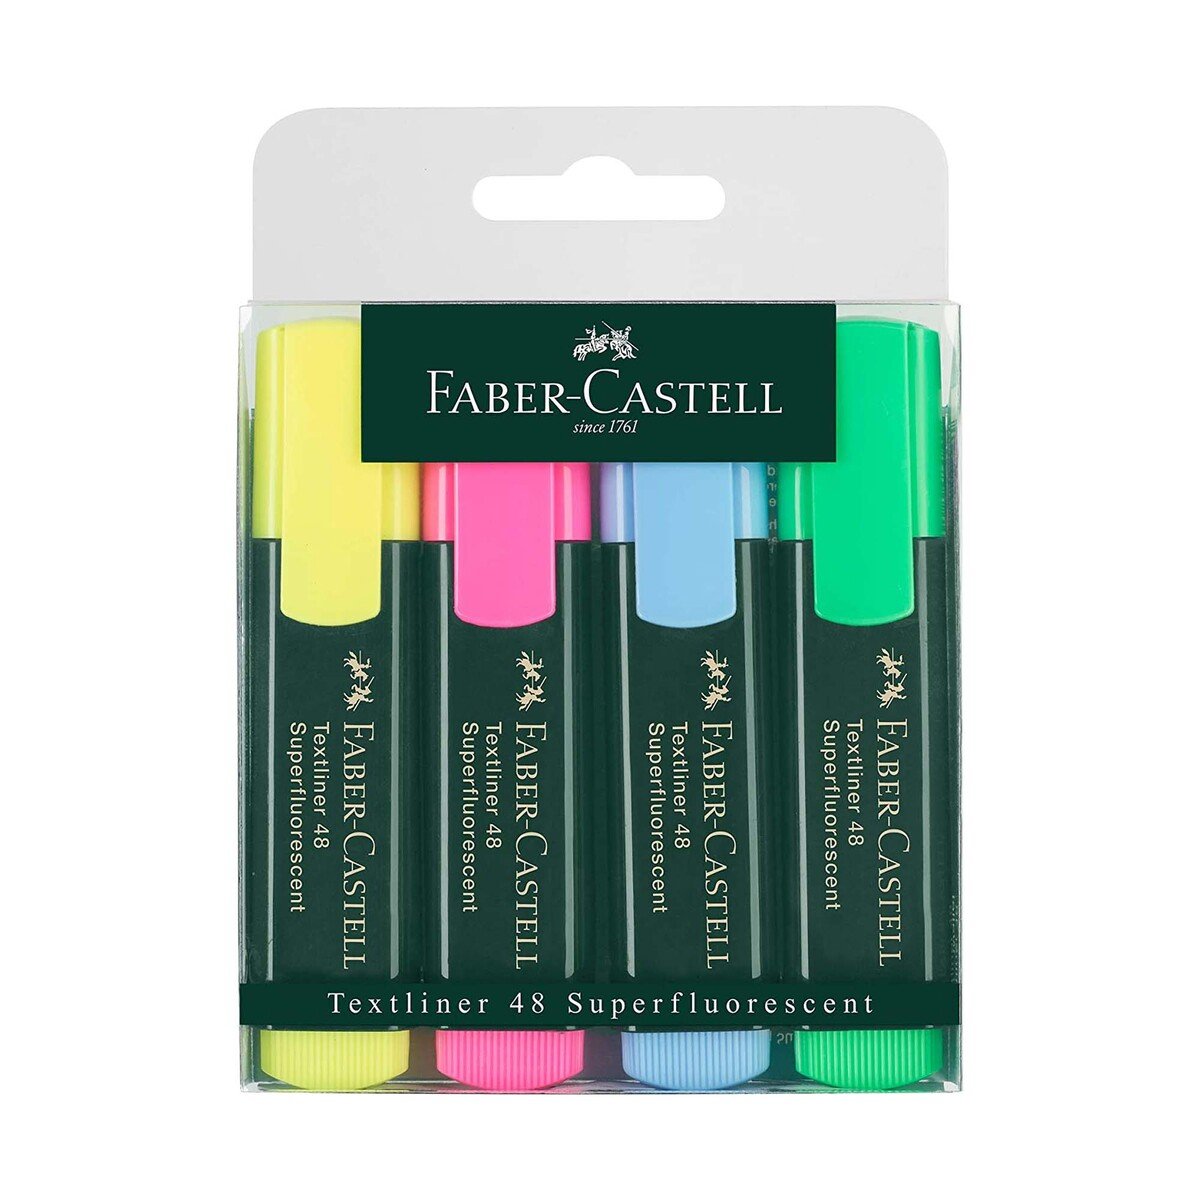 فابر كاستل أقلام تظليل بألوان فسفورية 48 ، 4 قطع ، 154804